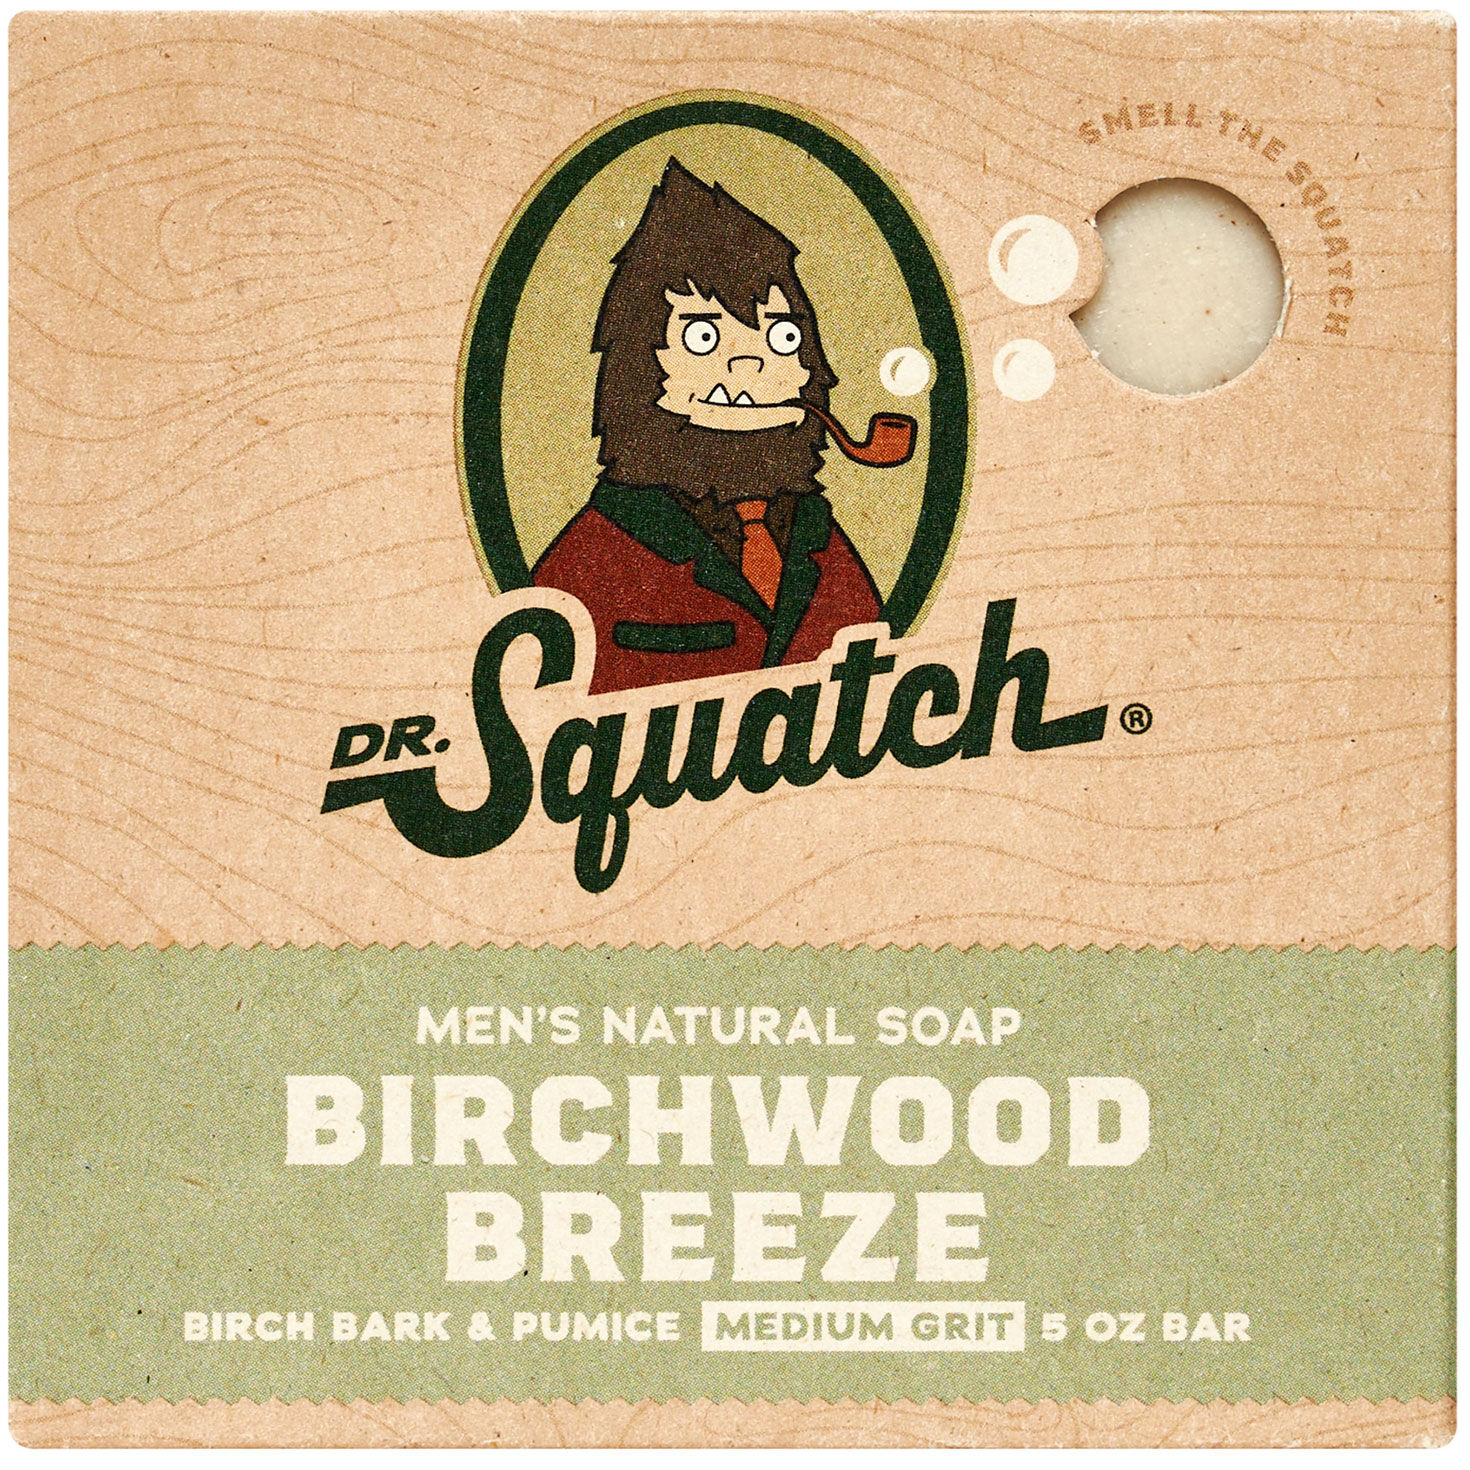 Birchwood Breeze - Dr. Squatch - UK